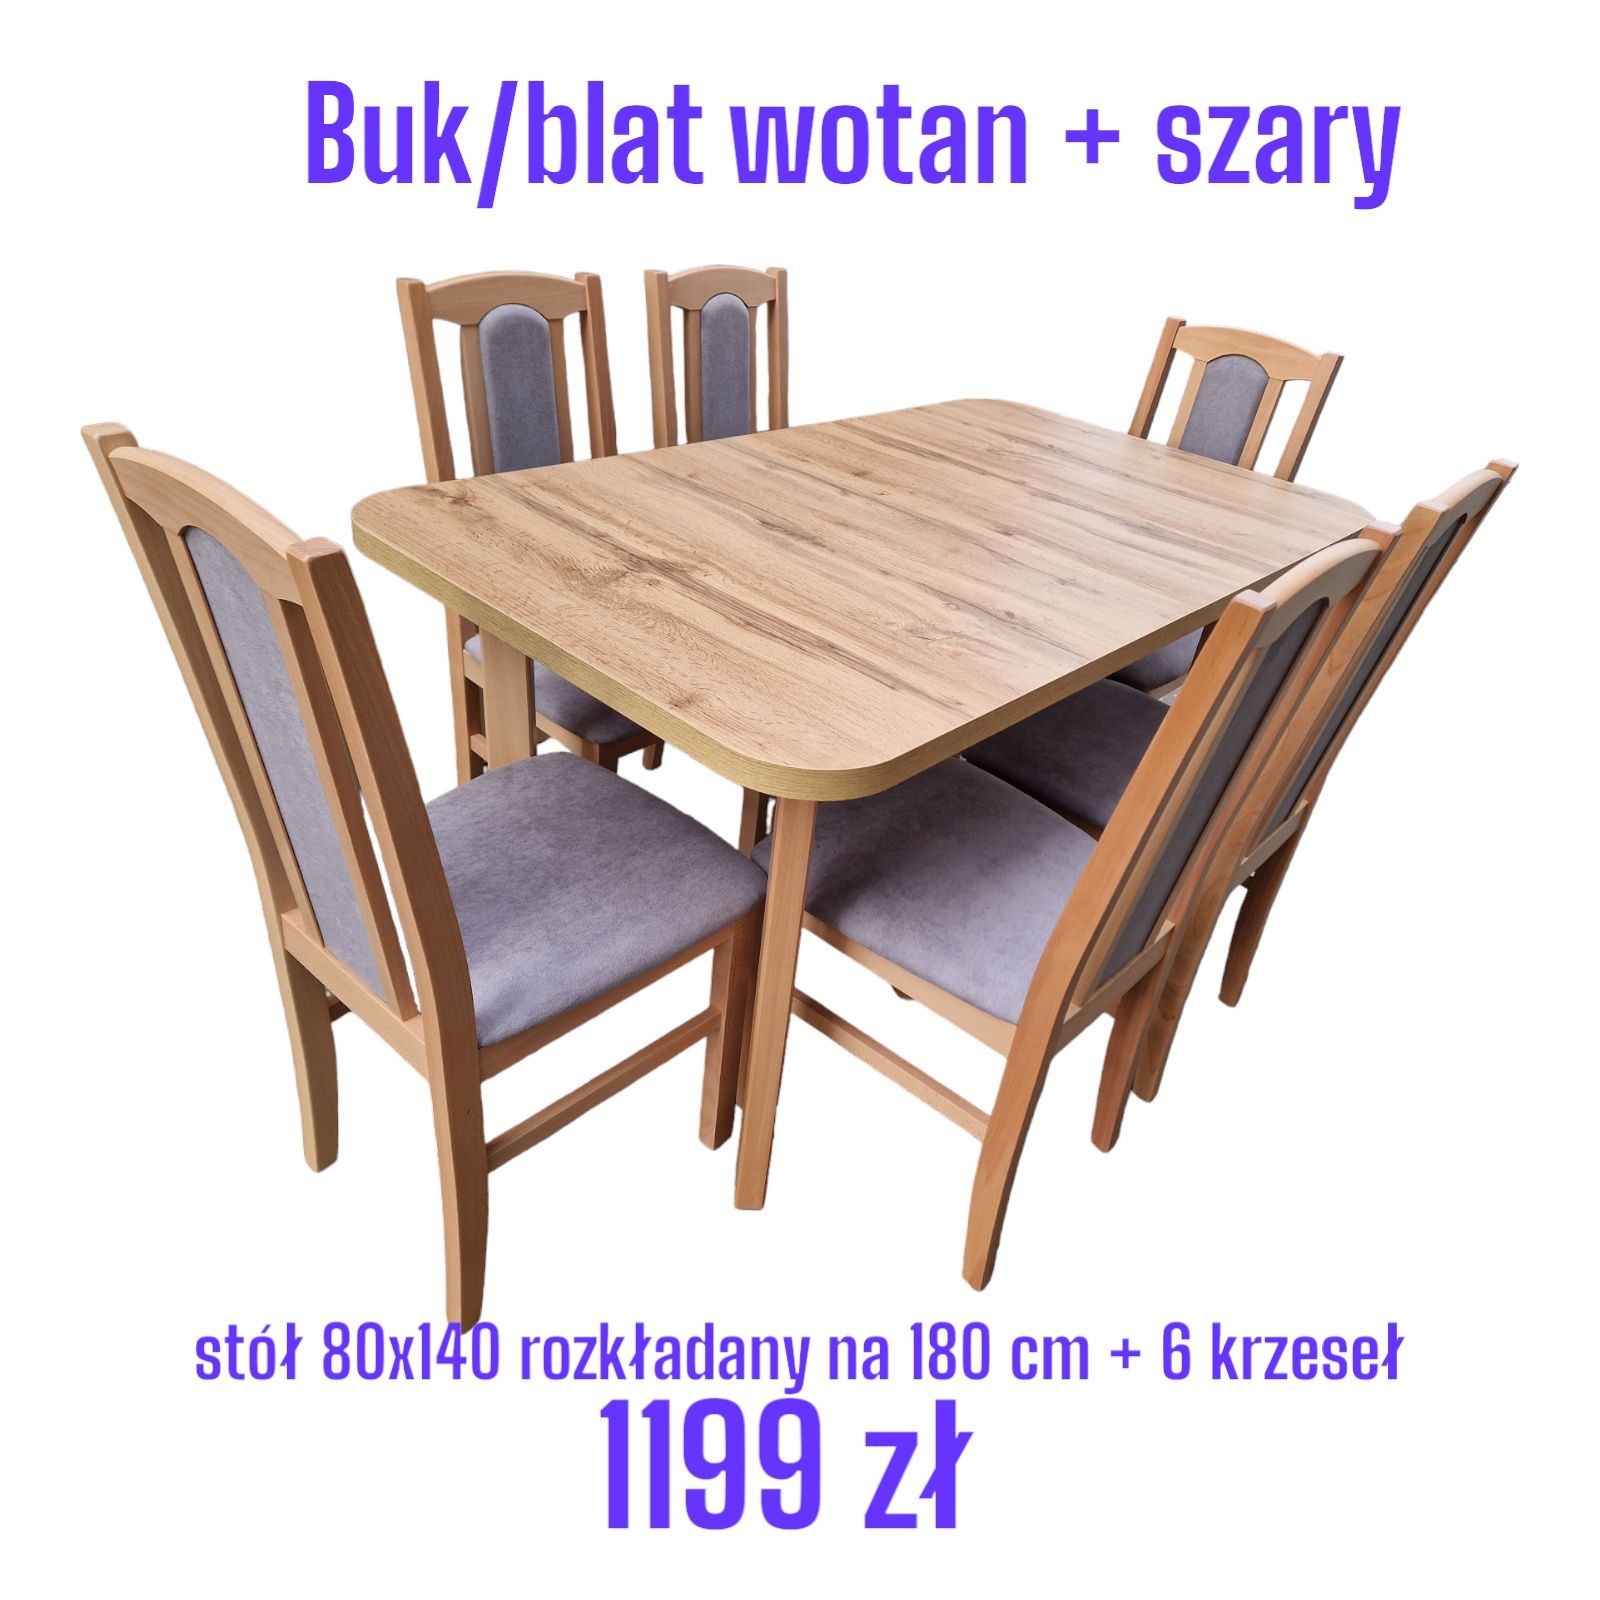 Stół 80x140/180 + 6 krzeseł, buk/wotan + szary, dostawa cała PL